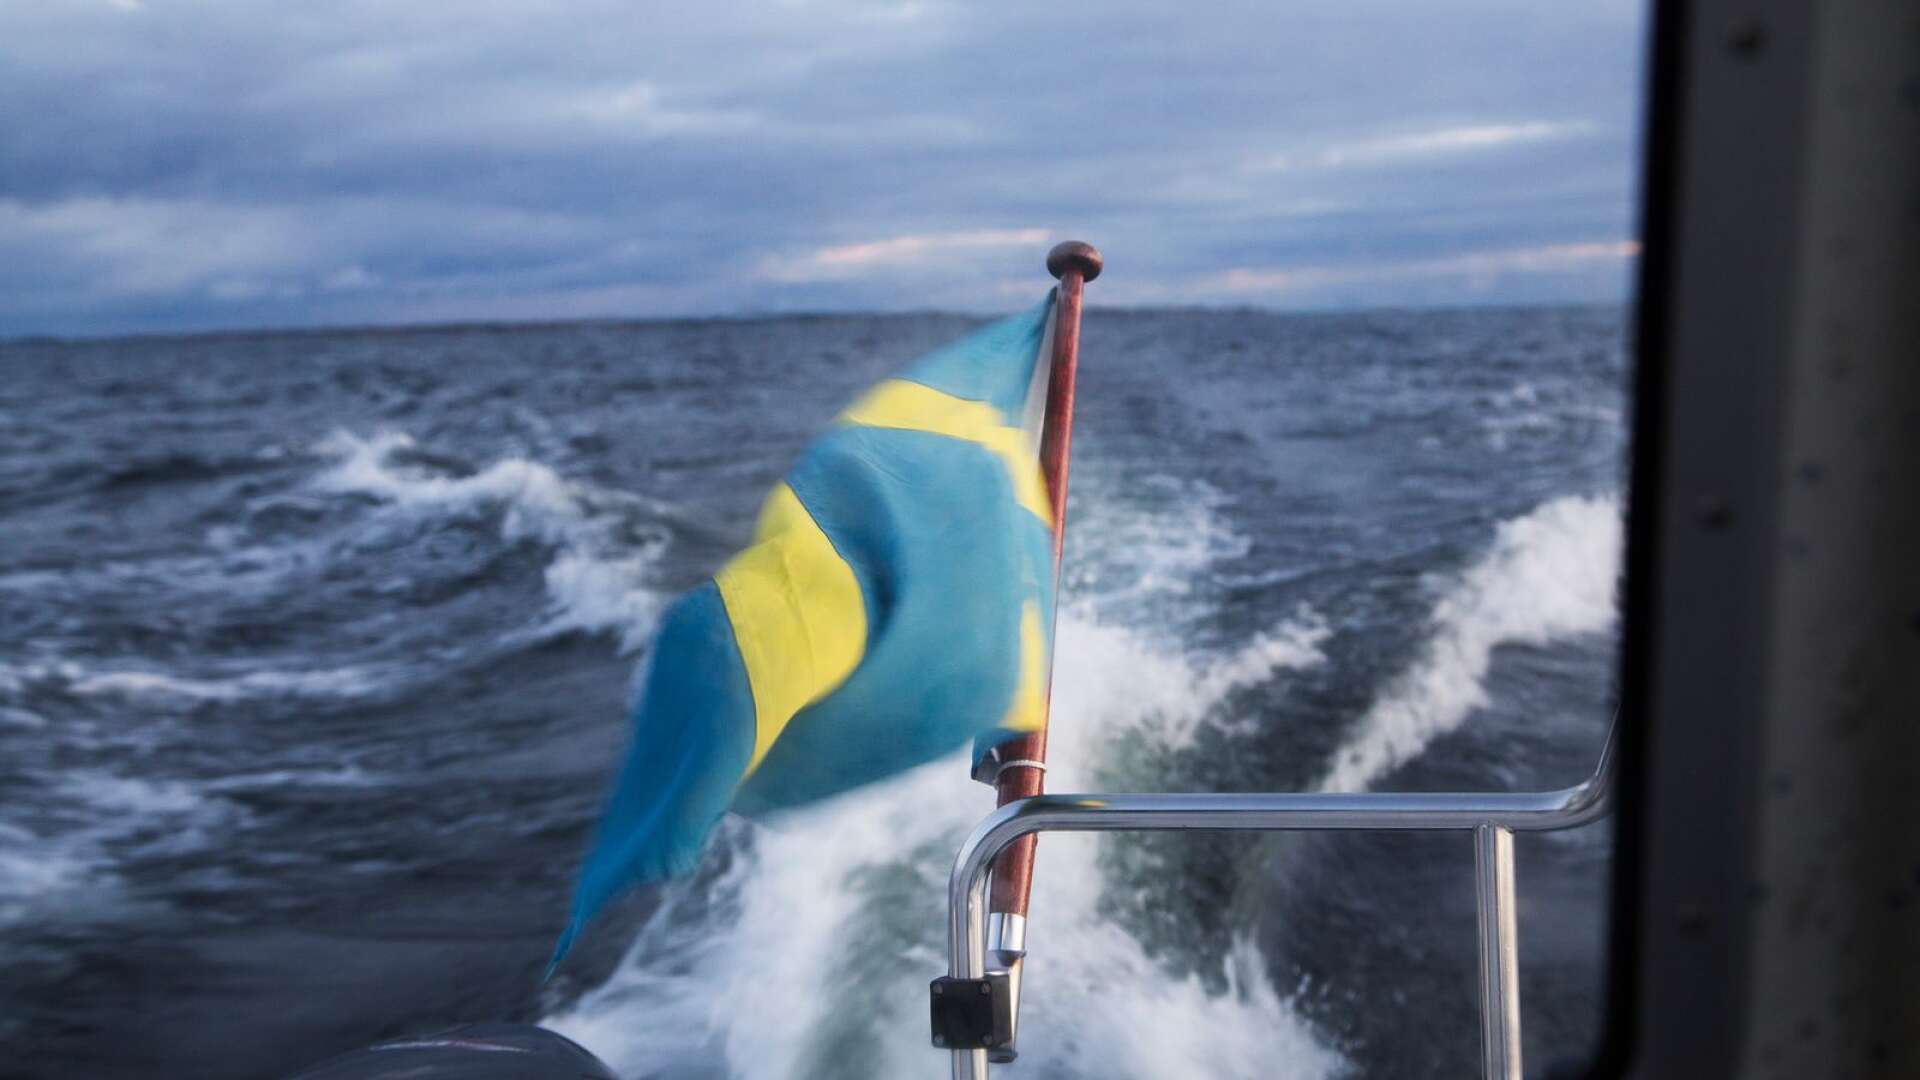 Hastighetsbegränsningar, eller andra sätt att reglera hur fritidsbåtar får framföras, är mer effektiva åtgärder än rena förbud som föreslås av några myndigheter och organisationer, skriver Lars-Göran Kring med flera.